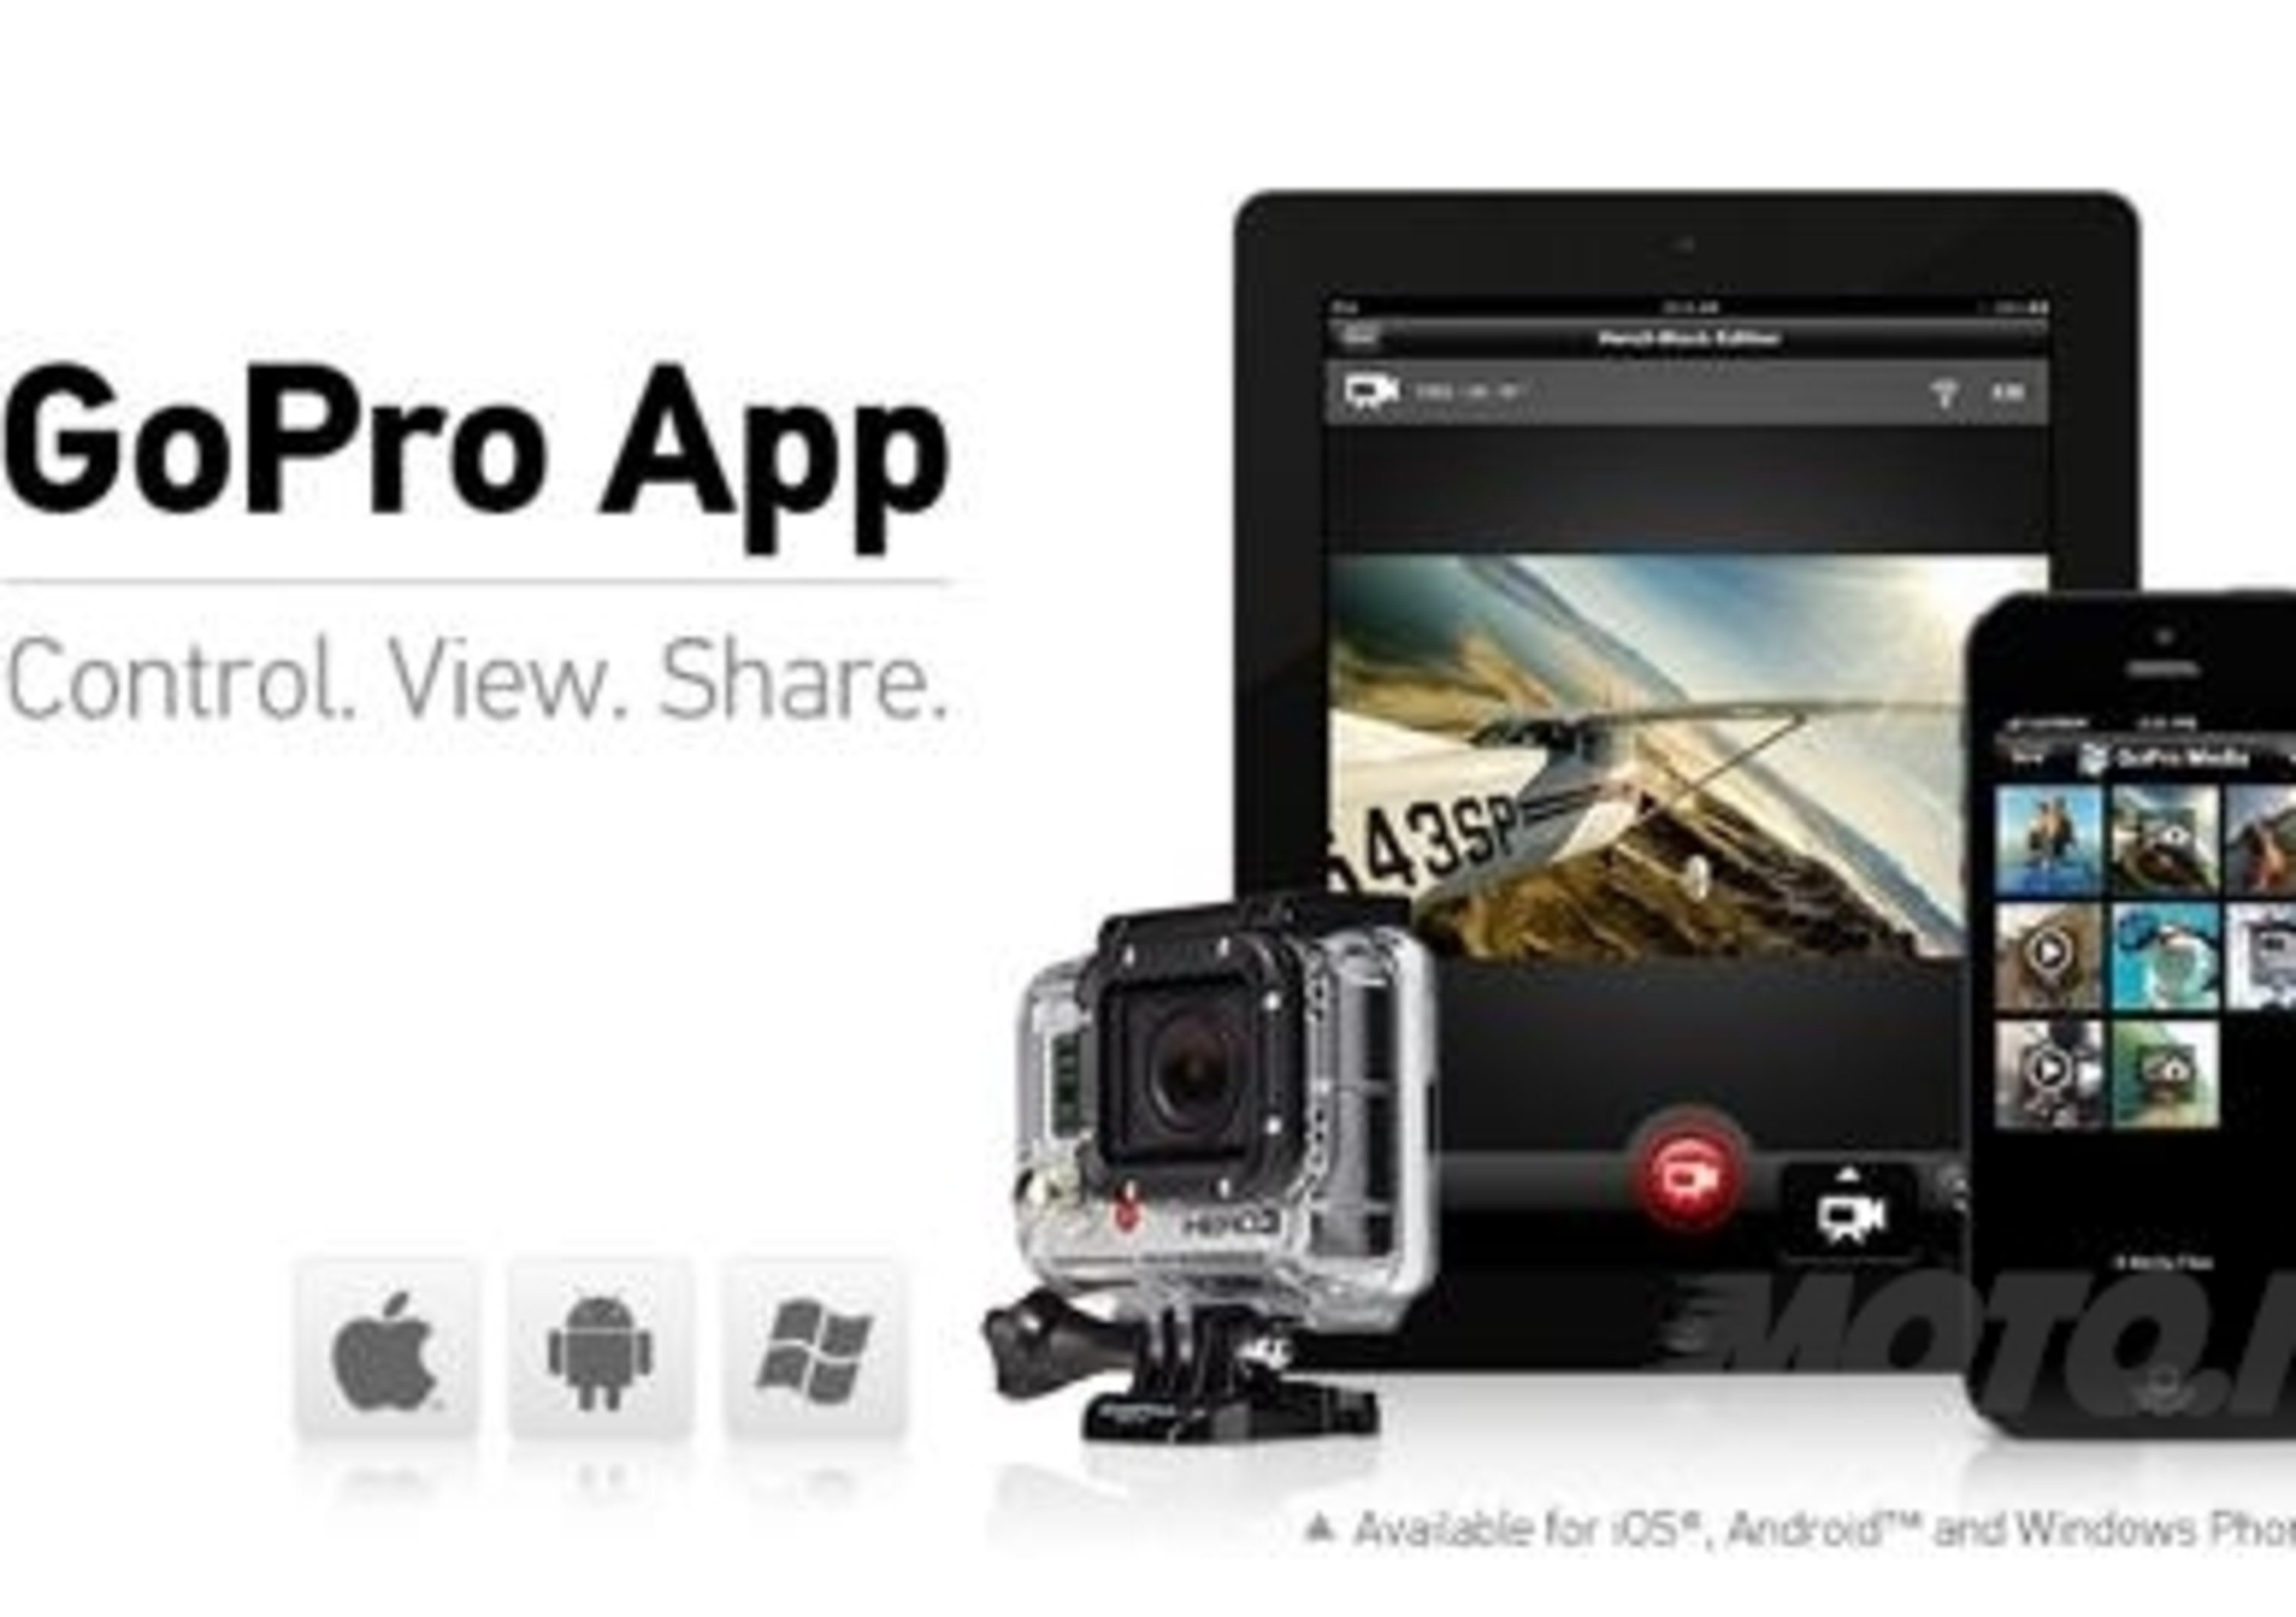 Nuova GoPro App 2.0: controlla, guarda e condividi!